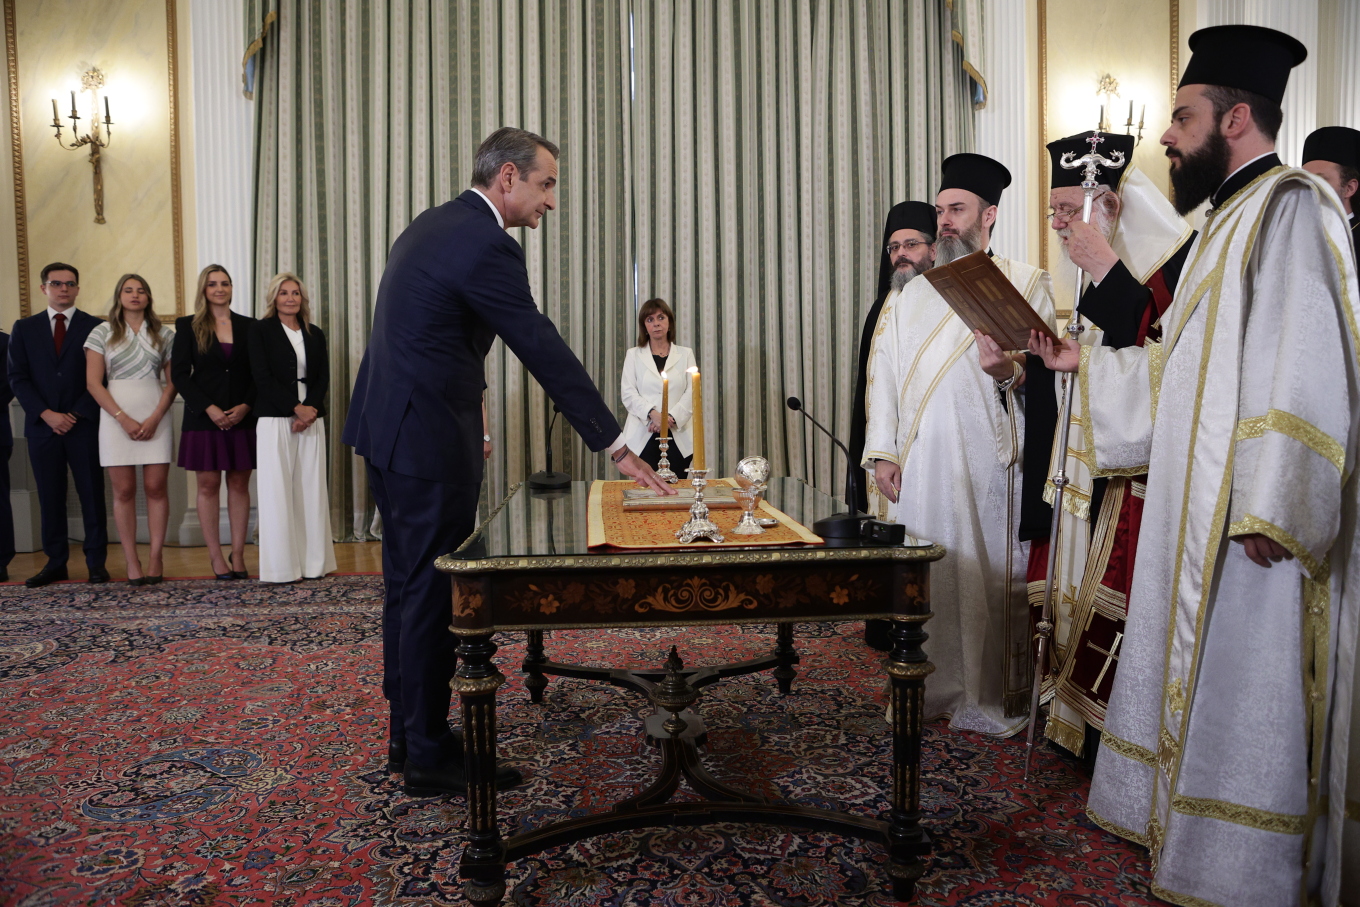 Η ορκωμοσία πραγματοποιήθηκε από τον αρχιεπίσκοπο Ιερώνυμο, παρουσία της Προέδρου της Δημοκρατίας Κατερίνας Σακελλαροπούλου.